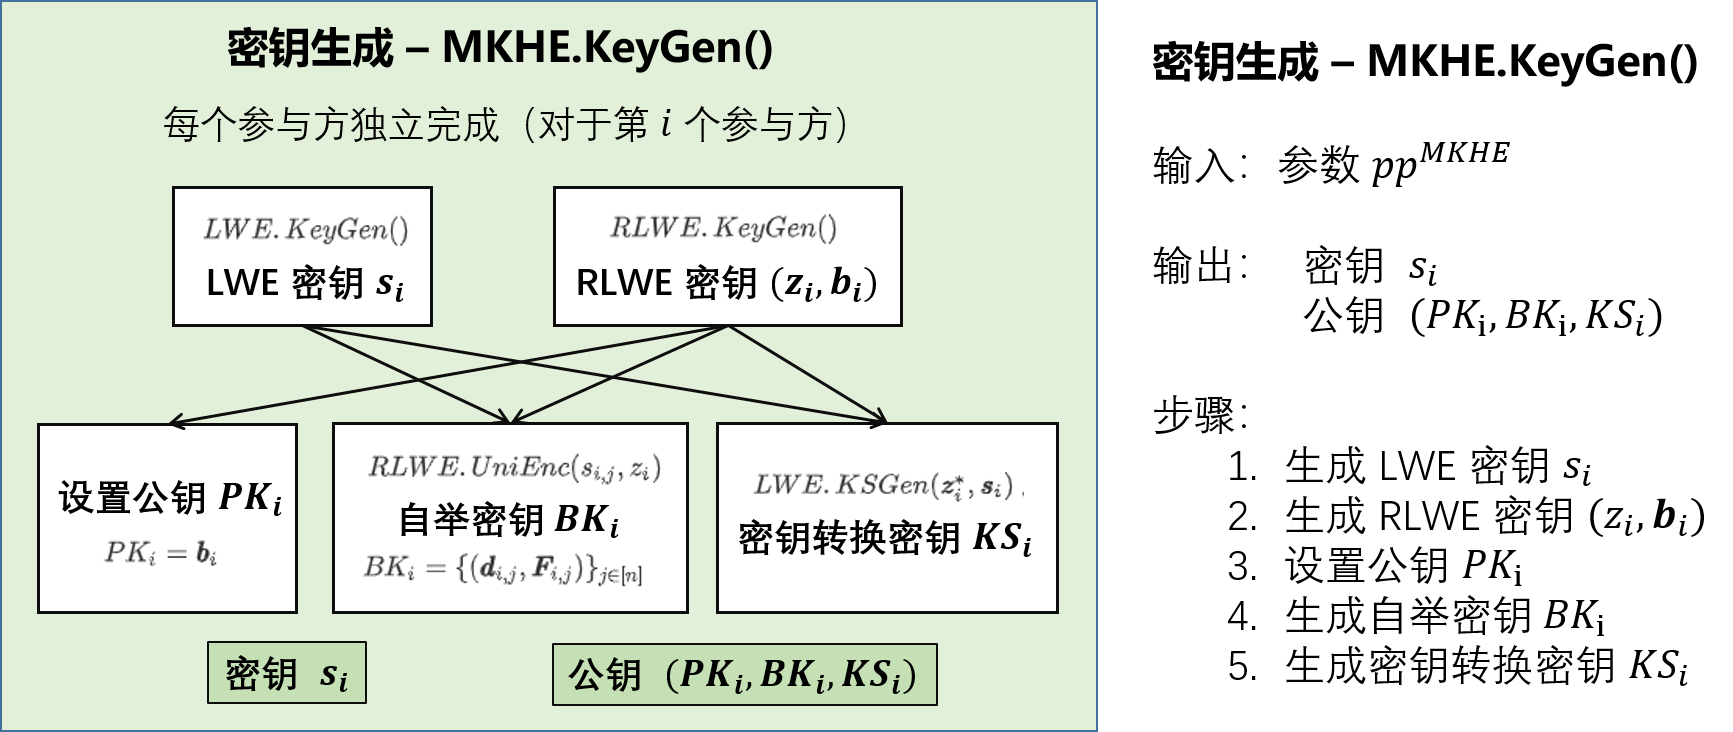 MKTFHE整体流程2-密钥生成